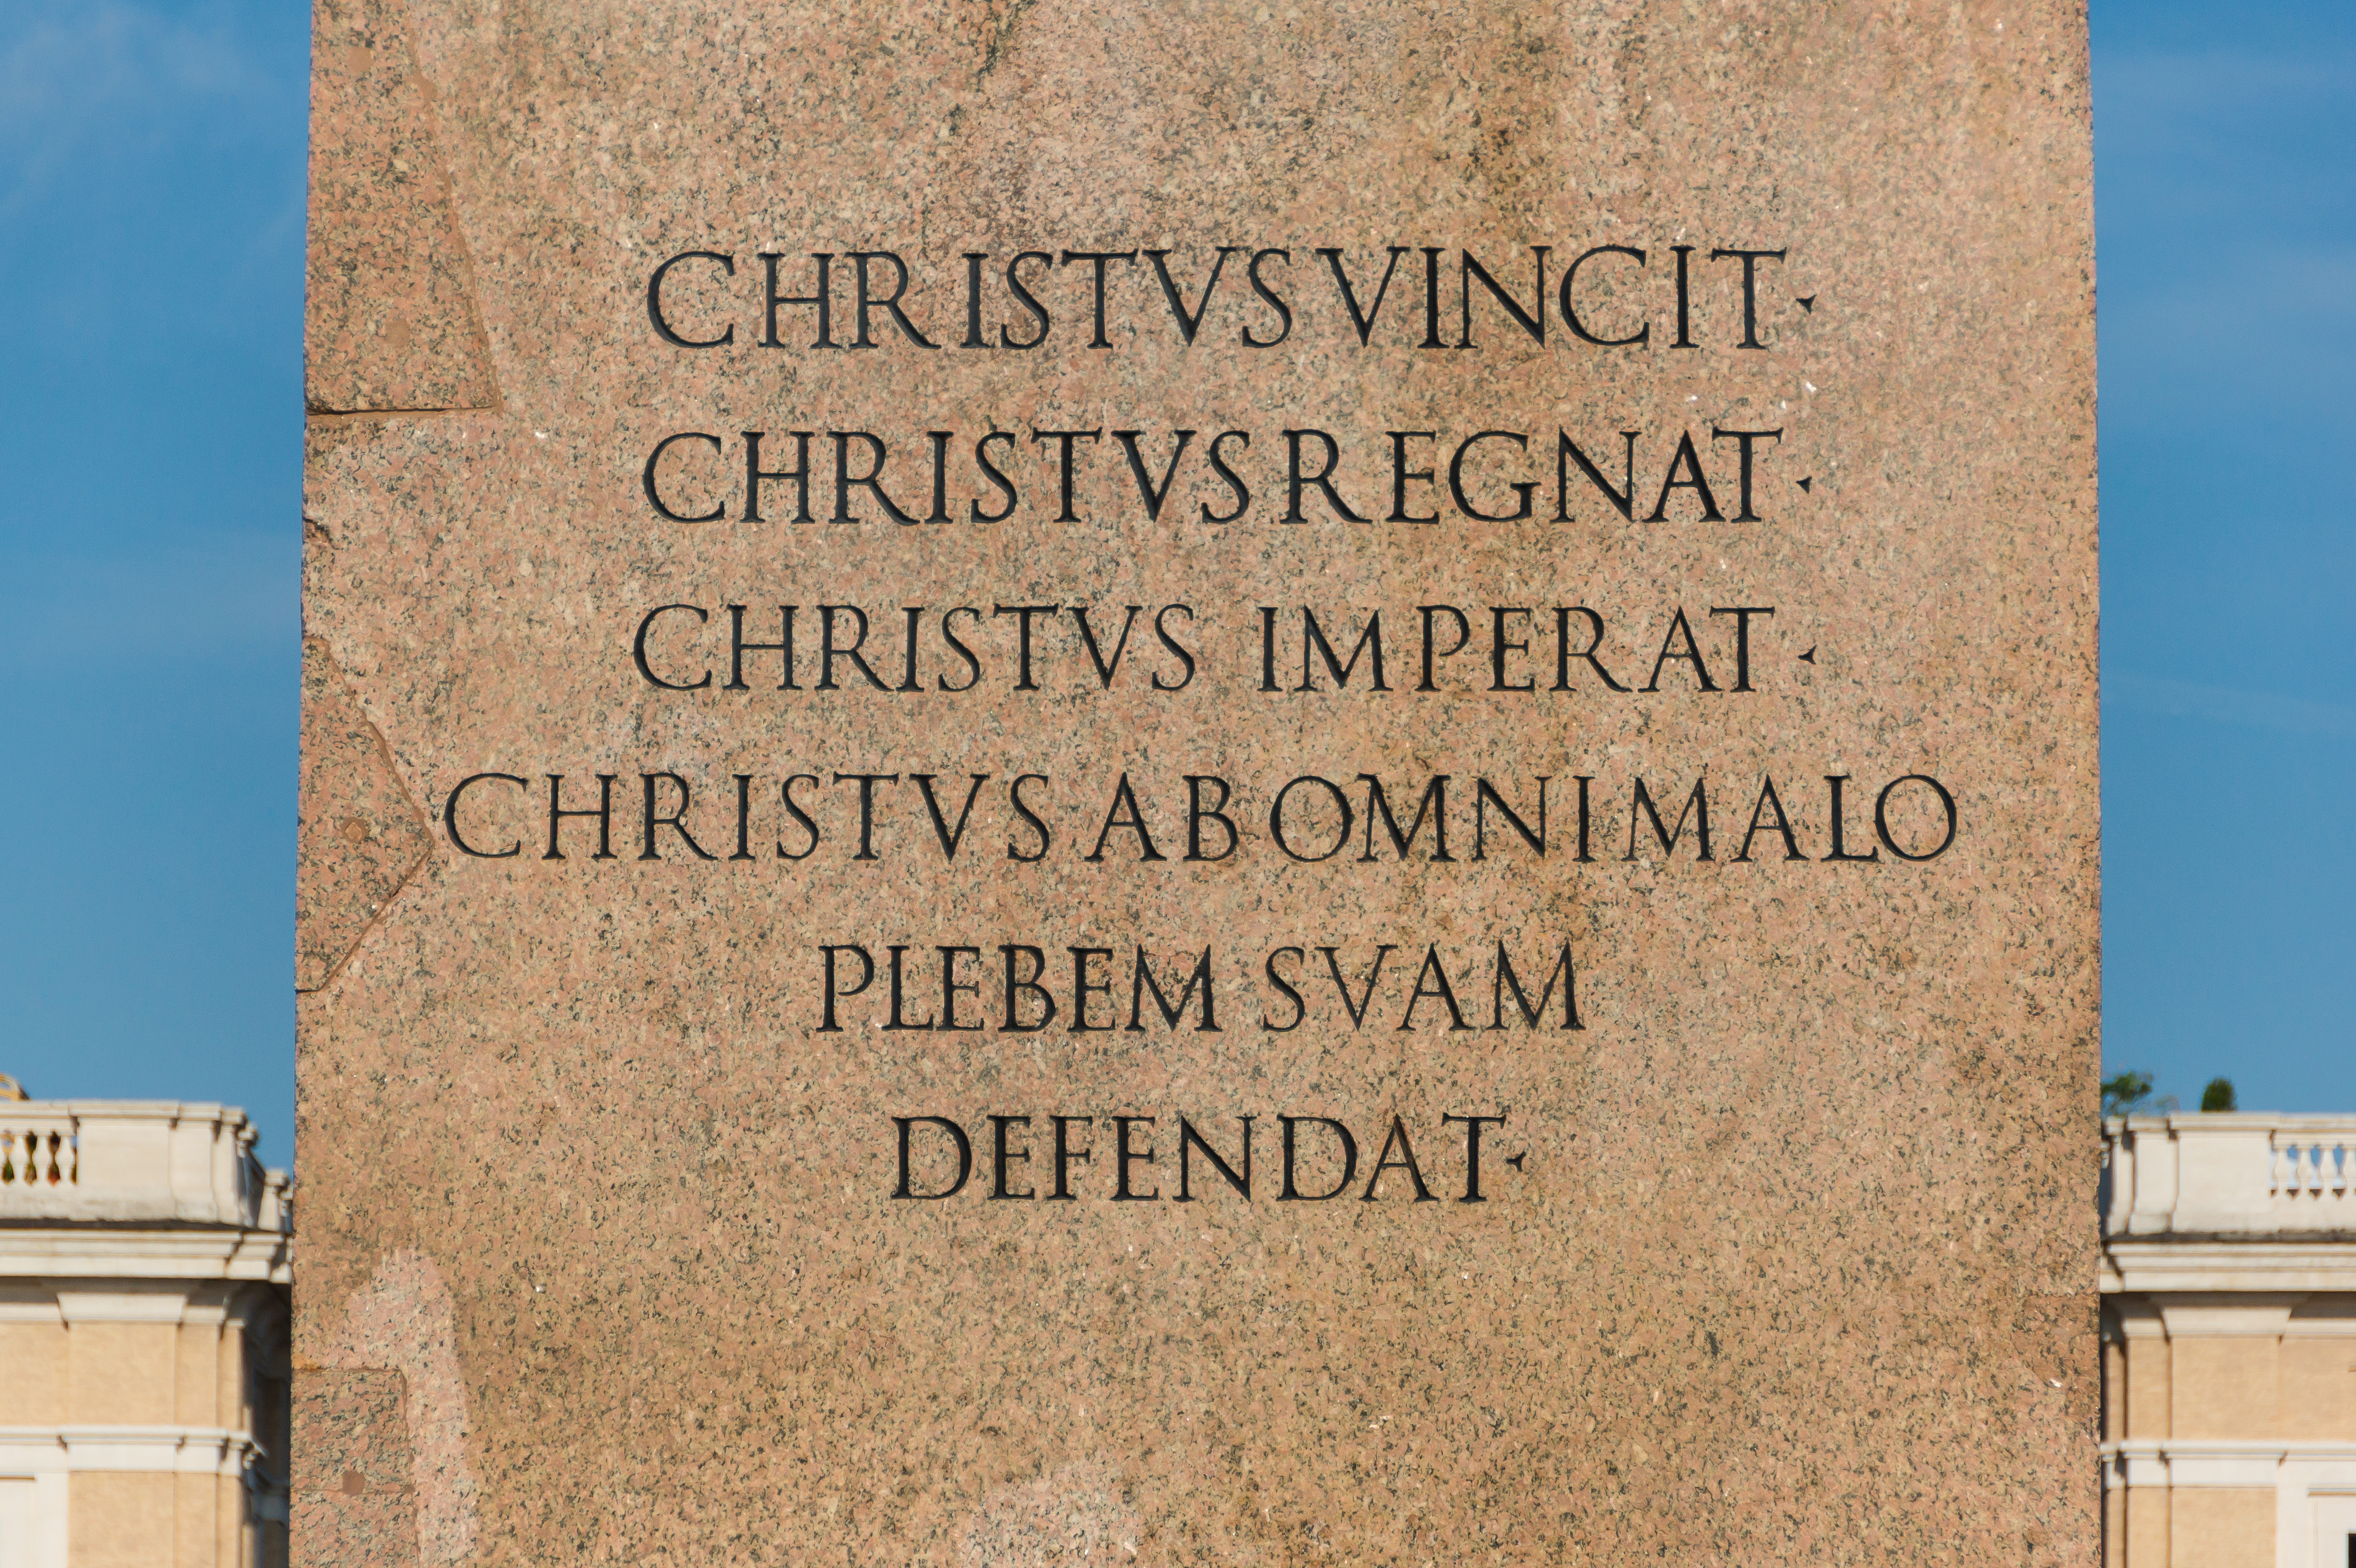 Text pedestal obelisk, Saint Peter's square, Vatican City